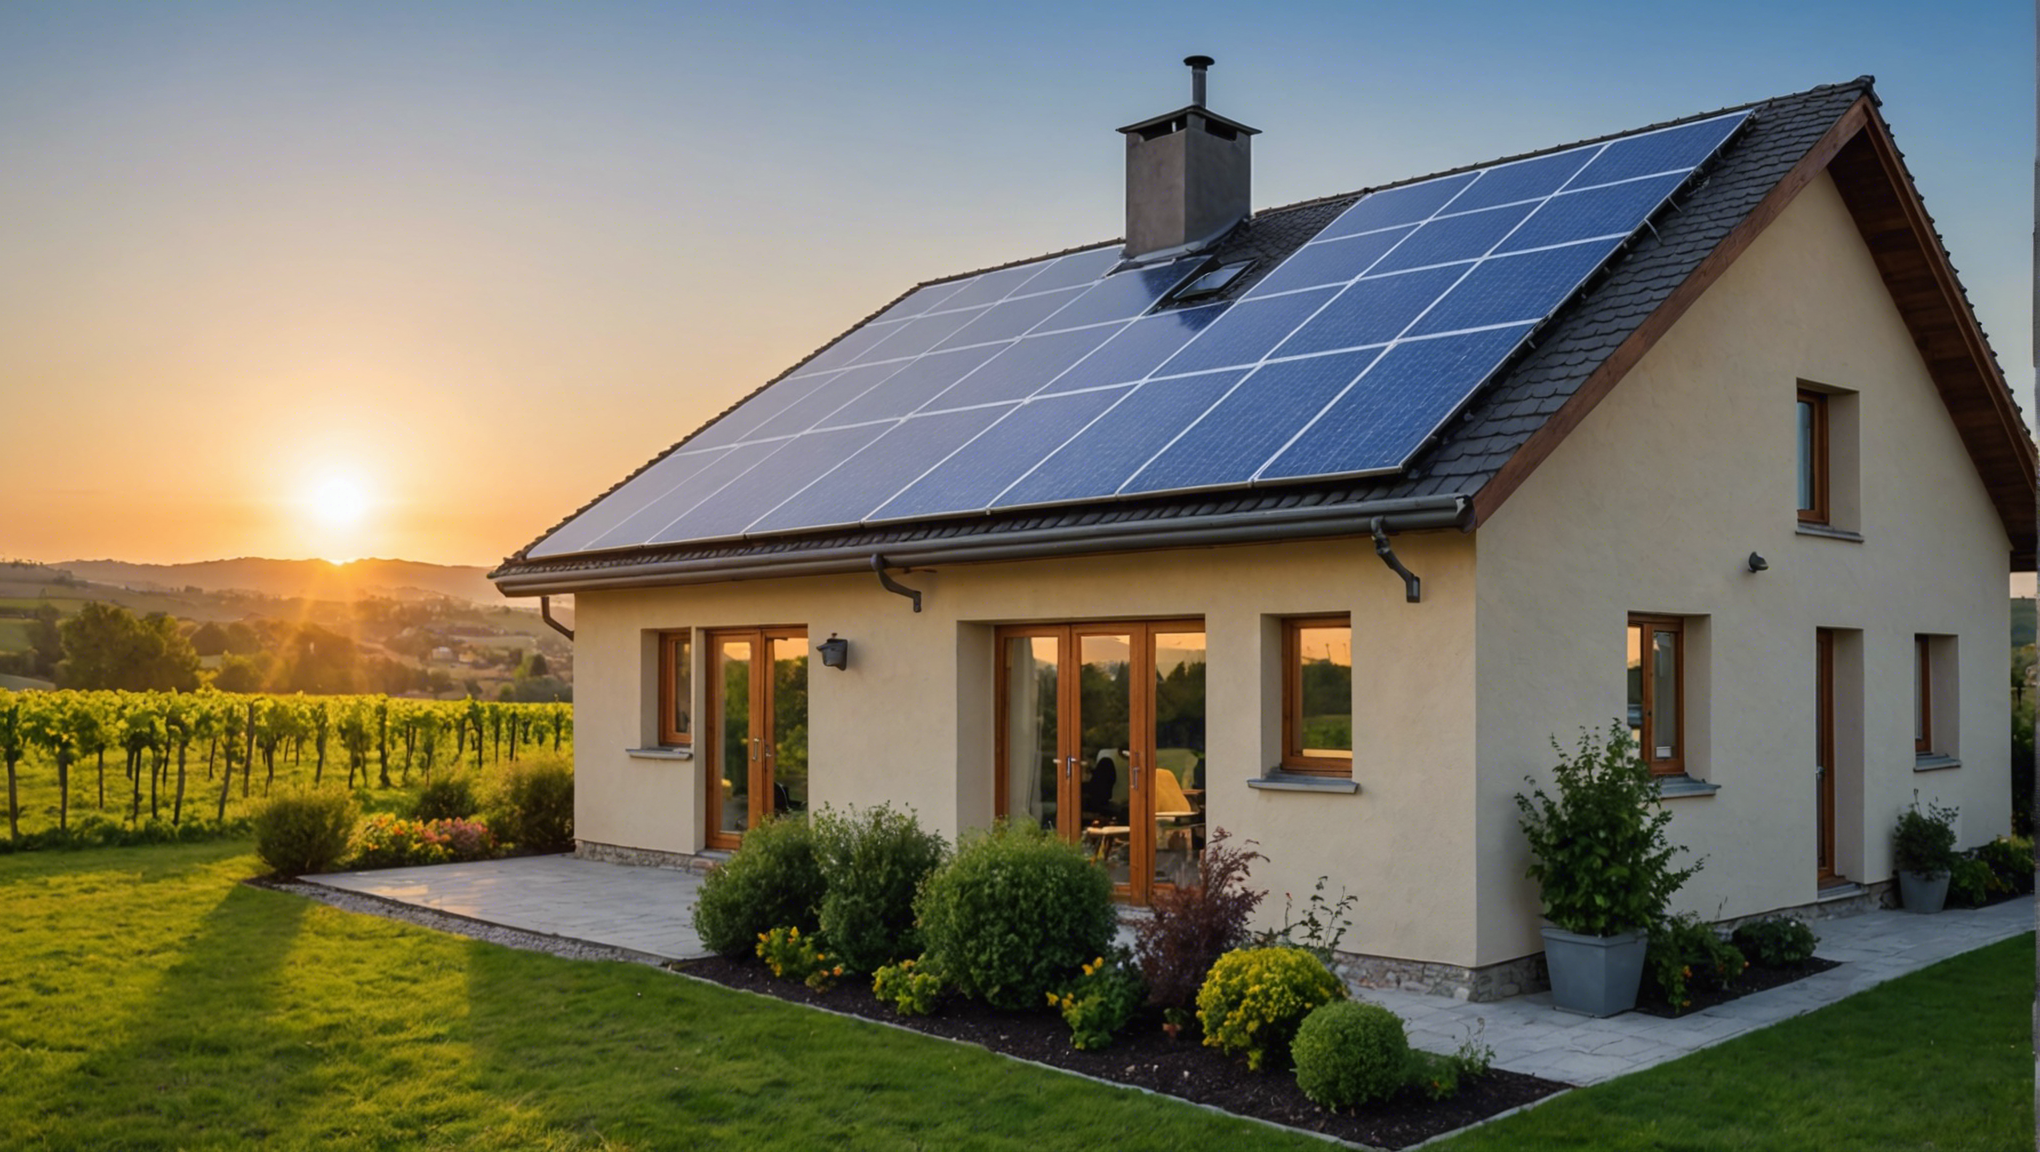 découvrez combien de panneaux solaires sont nécessaires pour alimenter une maison et apprenez comment passer à une énergie plus propre avec notre guide complet.